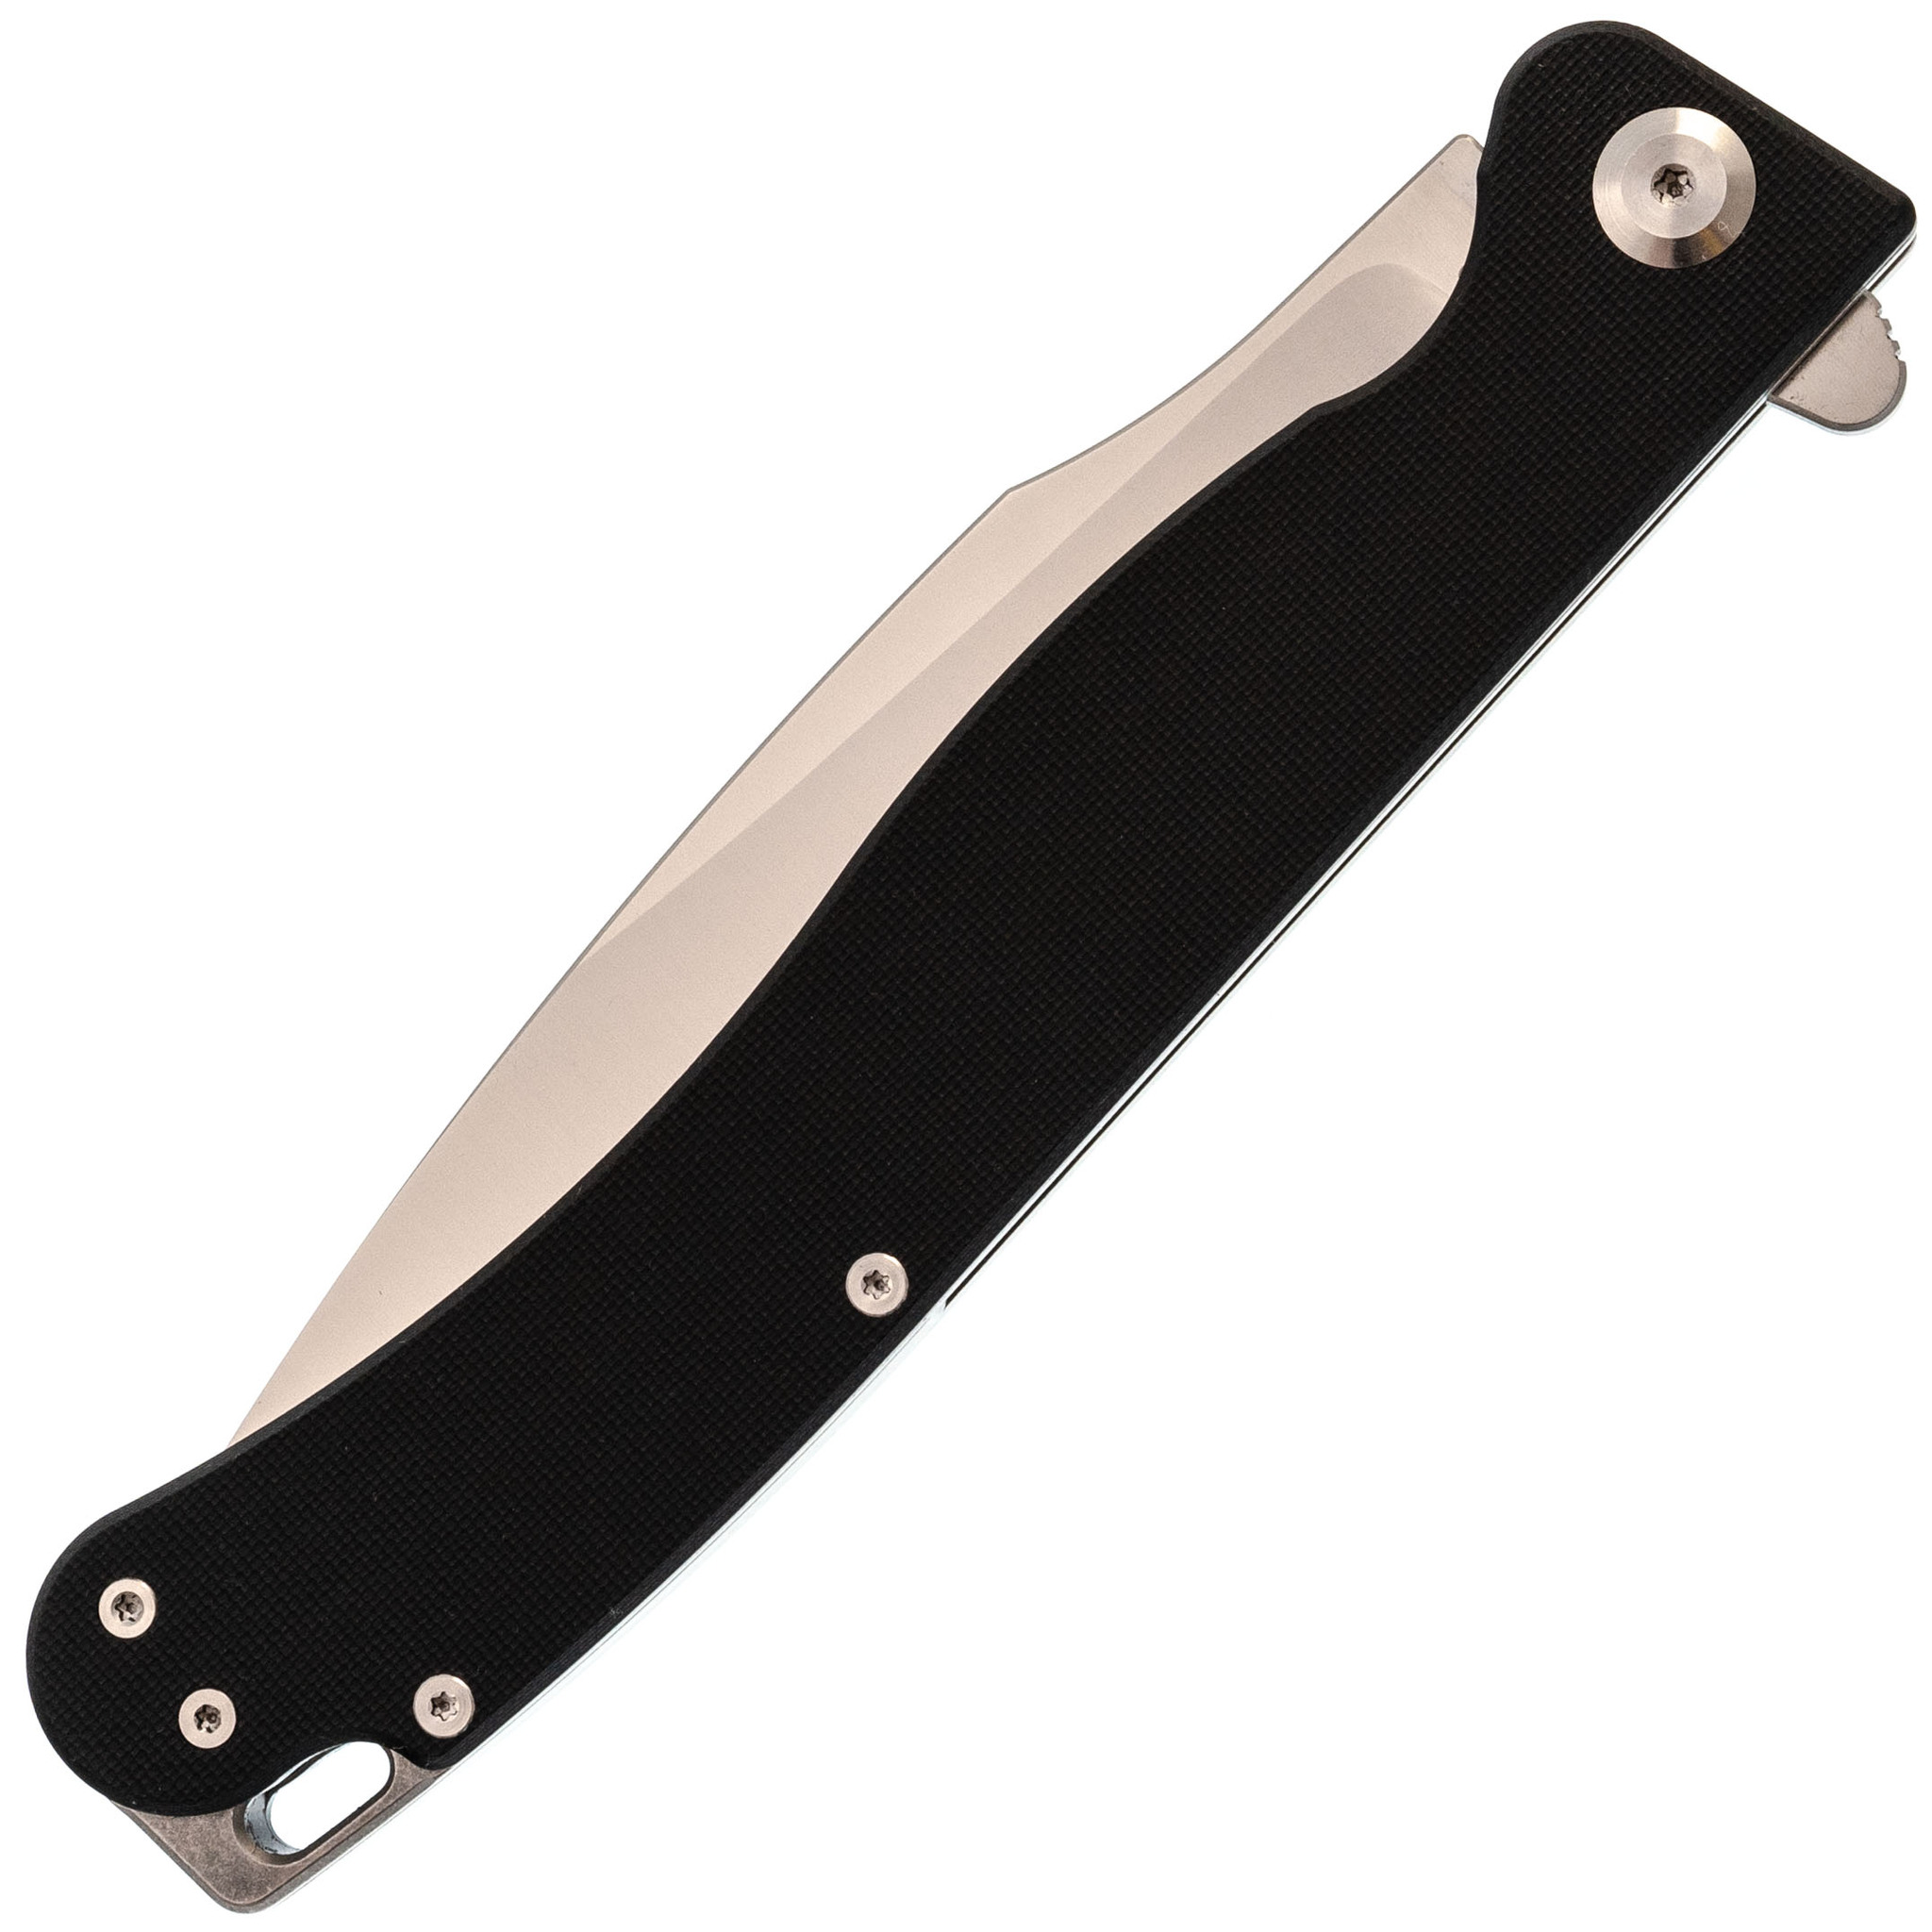 фото Складной нож daggerr condor black satin, сталь 154cm, рукоять g10